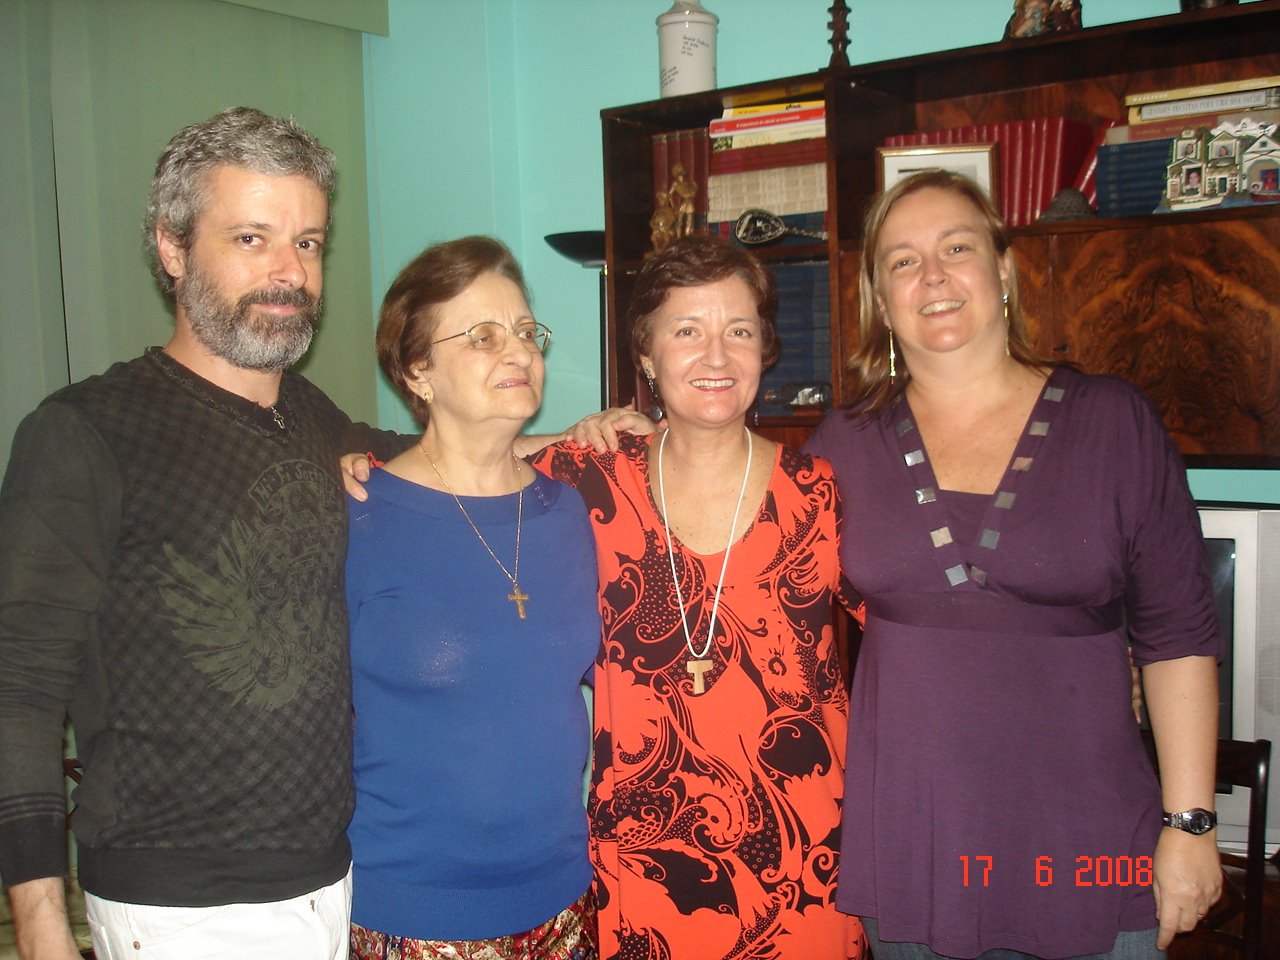 Festa de Despedida - Rio: Bill, mamãe, eu e Adriana